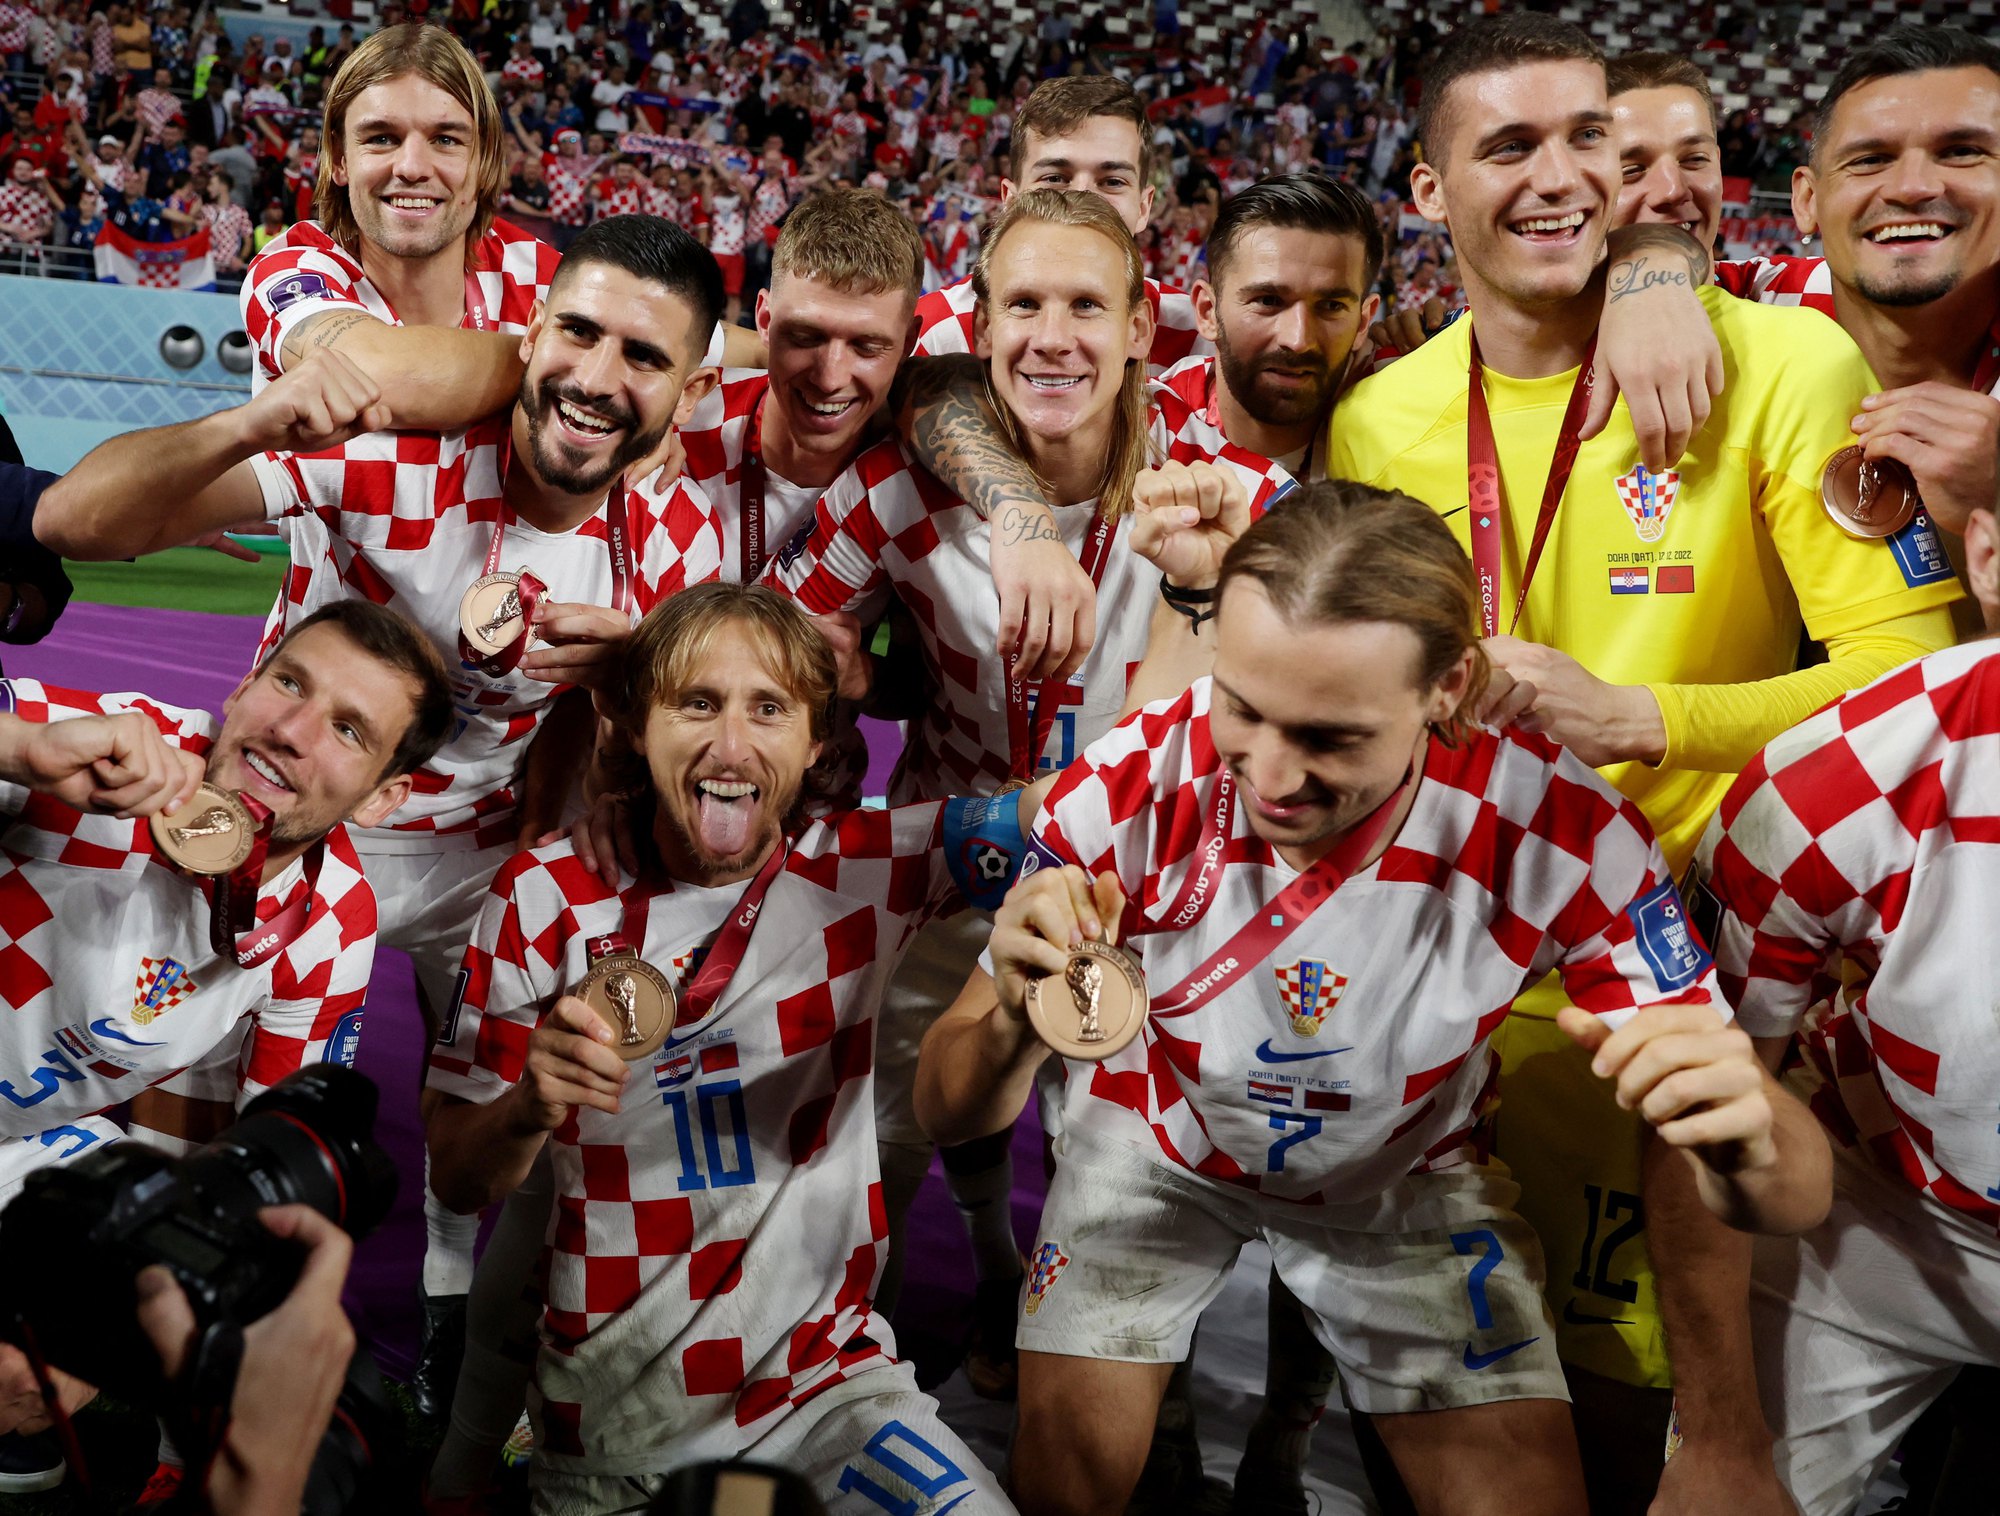 Bóng đá Croatia: Cùng hòa mình vào không khí sôi động của giải đấu bóng đá quốc tế và ngắm nhìn những pha bóng đẹp mắt từ đội tuyển Croatia. Với lối chơi tấn công mạnh mẽ, điều khiển bóng tài tình và lối đánh phòng ngự kiên cường, các cầu thủ Croatia sẽ khiến bạn thăng hoa trong từng giây phút trên sân cỏ.